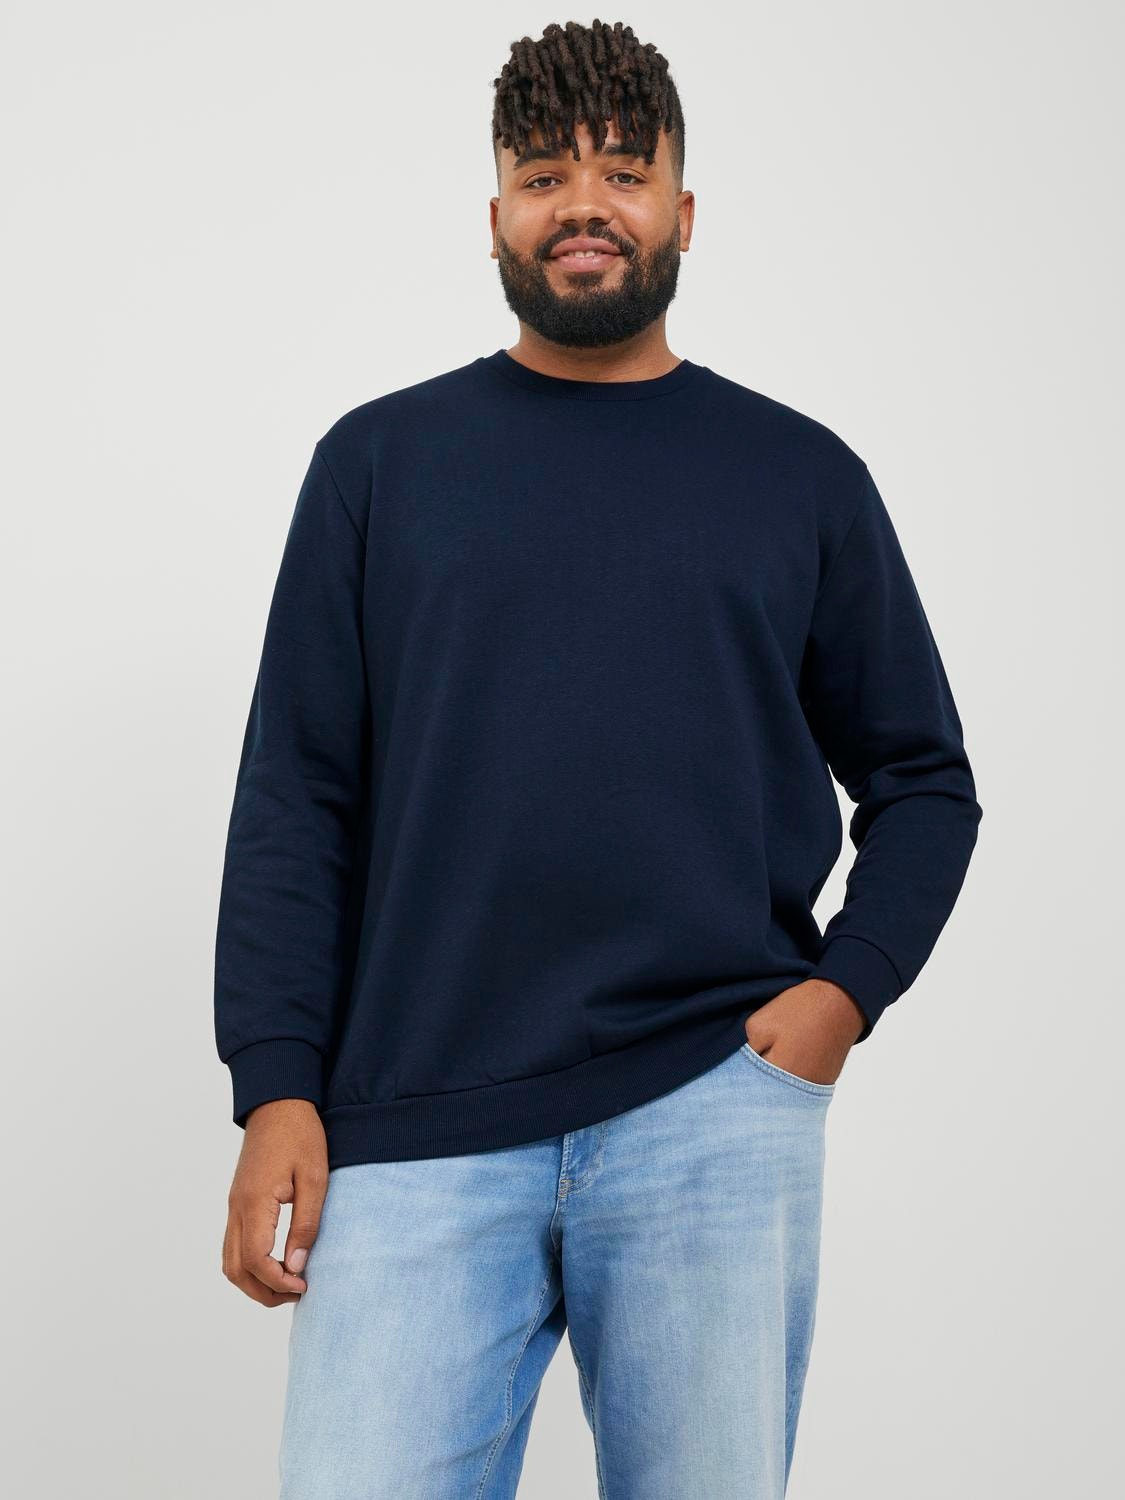 Jack & Jones Plus Size Einfarbig Sweatshirt mit Rundhals -Navy Blazer - 12250594